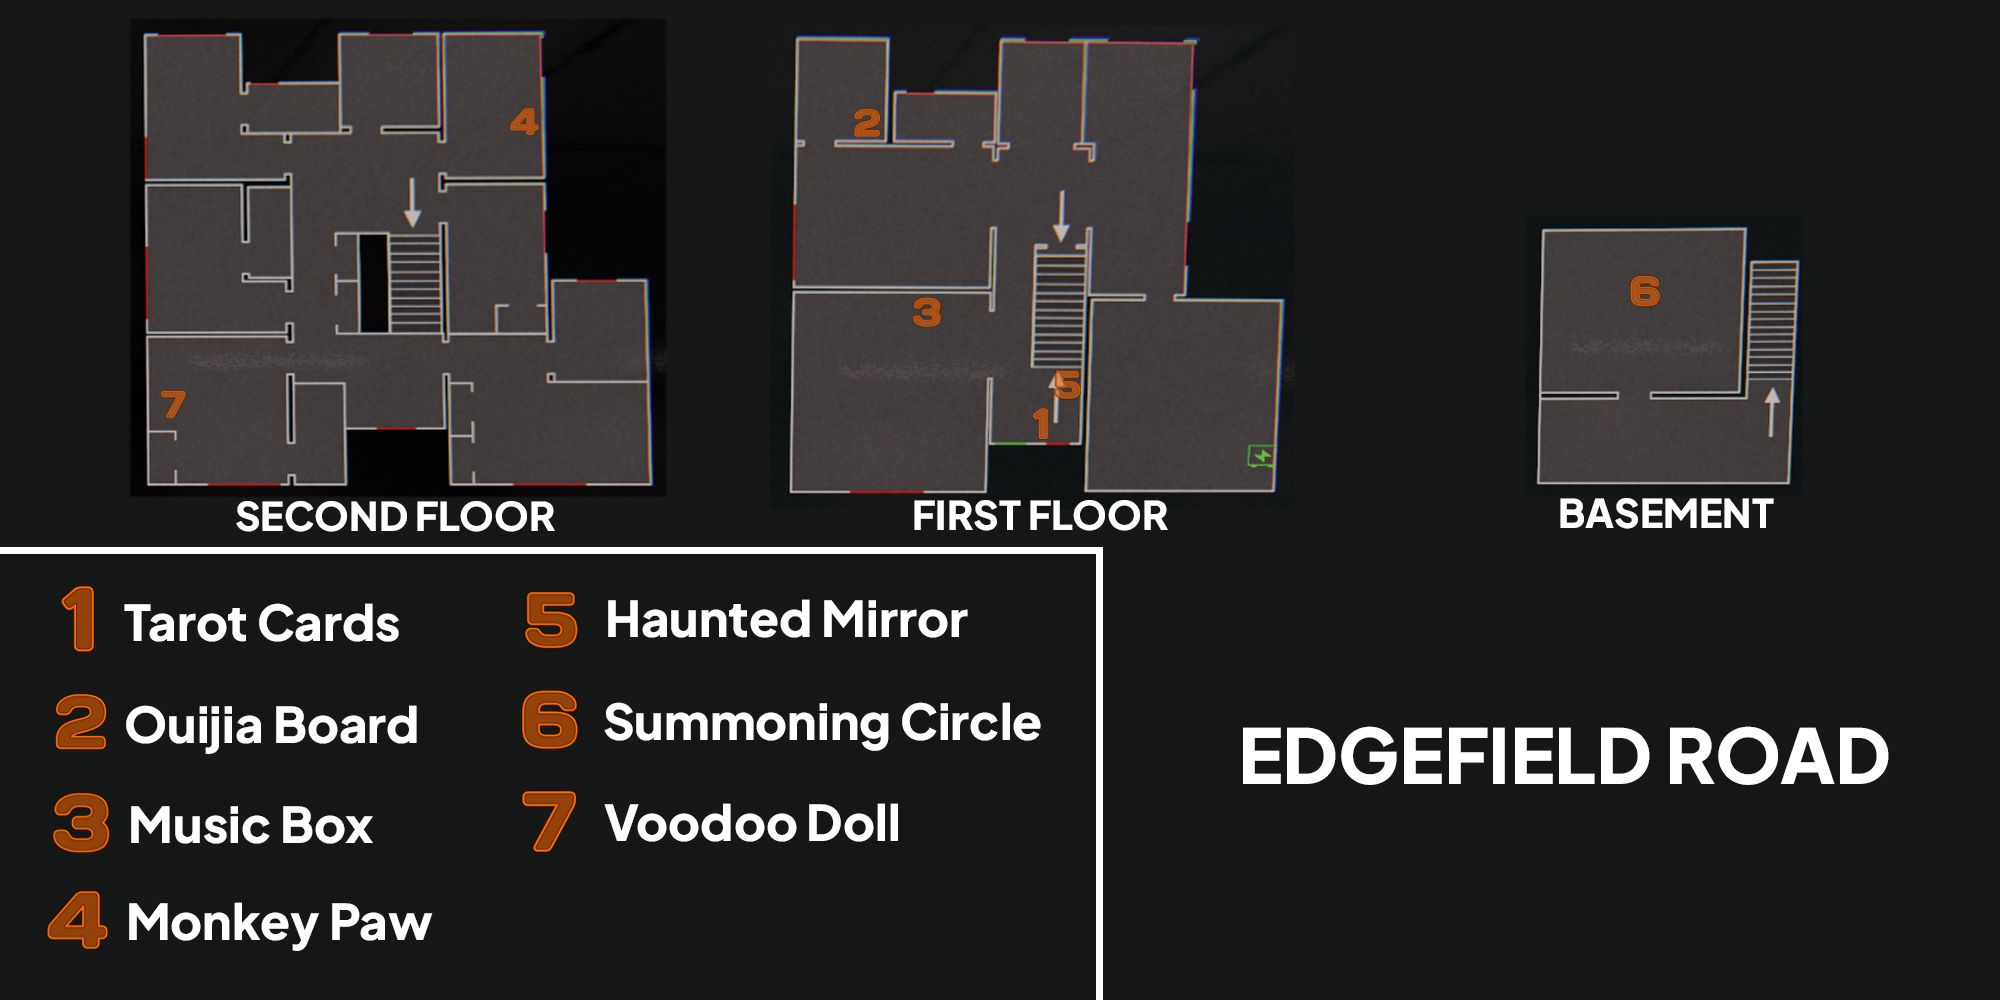 Изображение показывает карту Edgefield Road в игре Phasmophobia с оранжевыми числами, показывающими местоположение семи проклятых объектов.